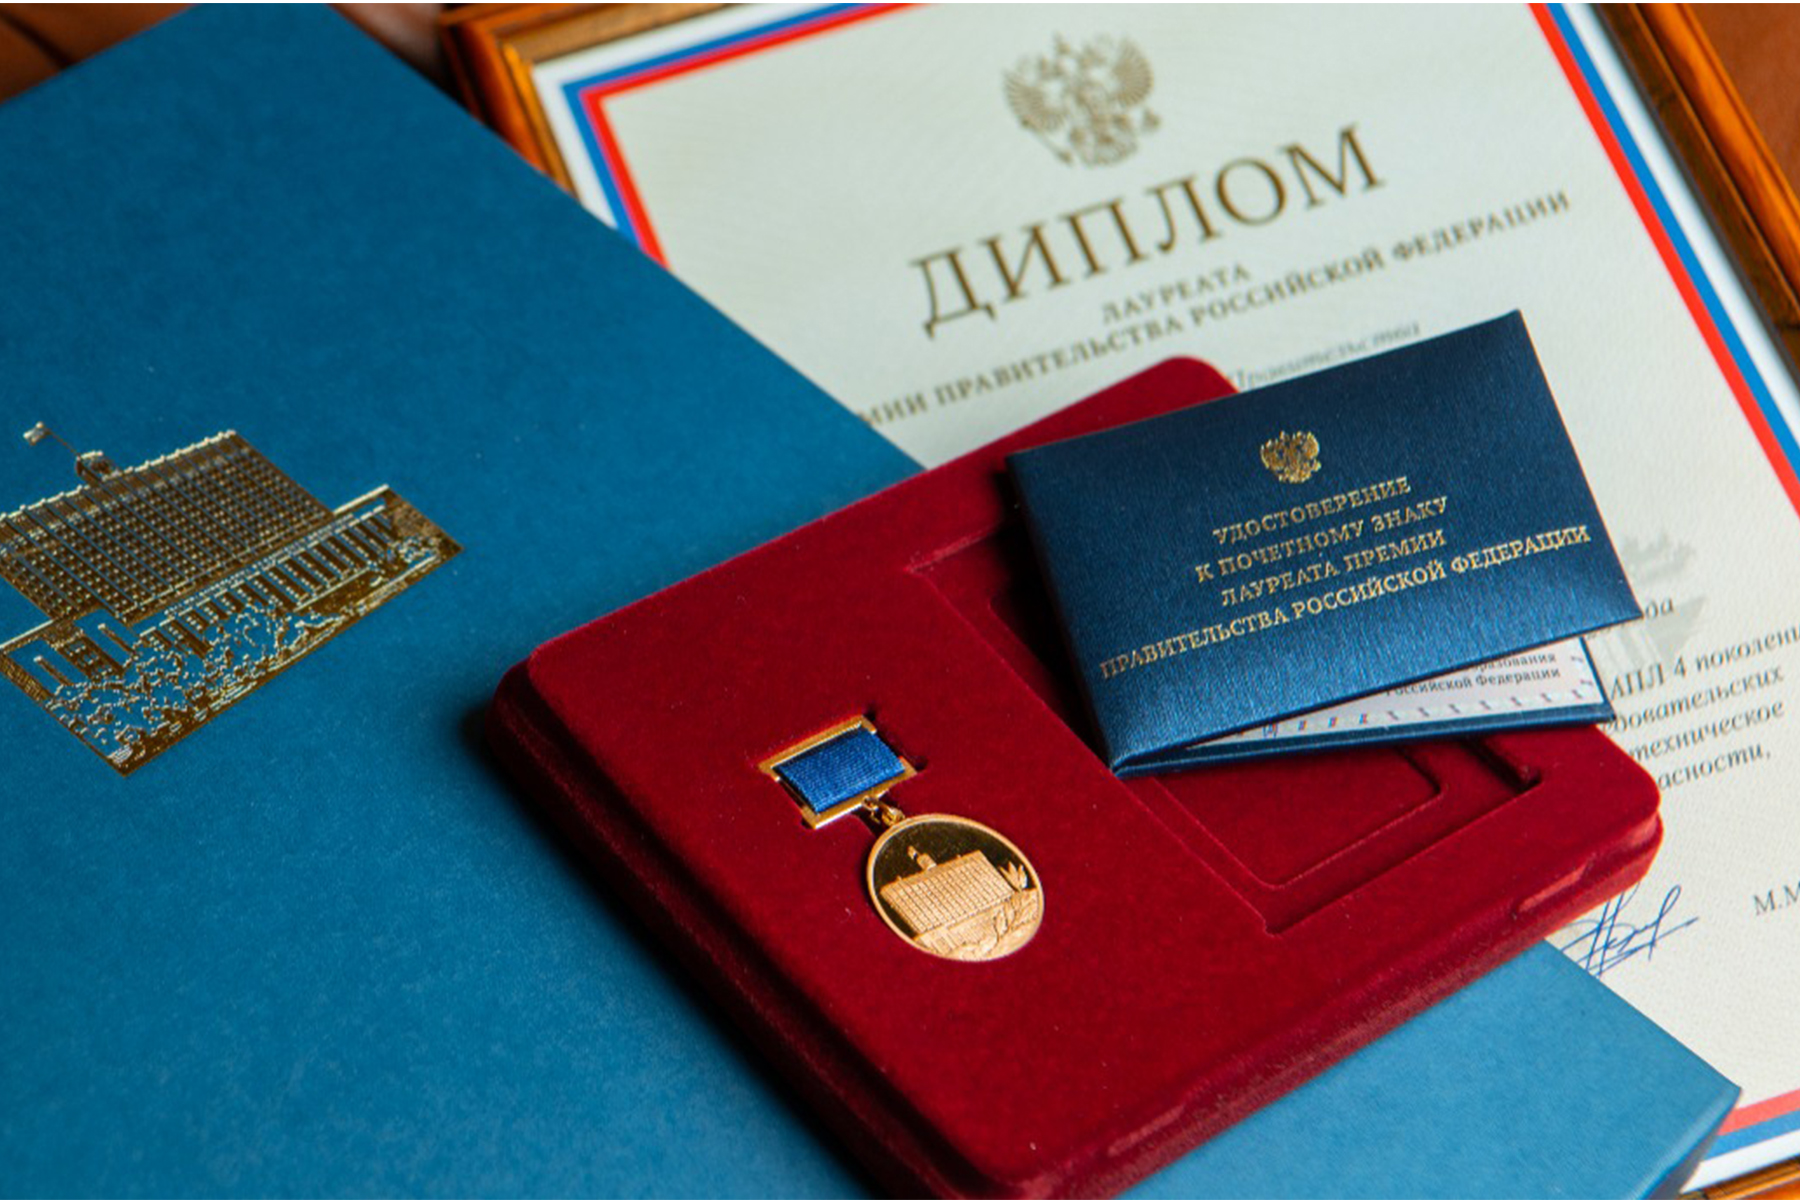 Начался прием работ на соискание премий Правительства Российской Федерации на 2023 год